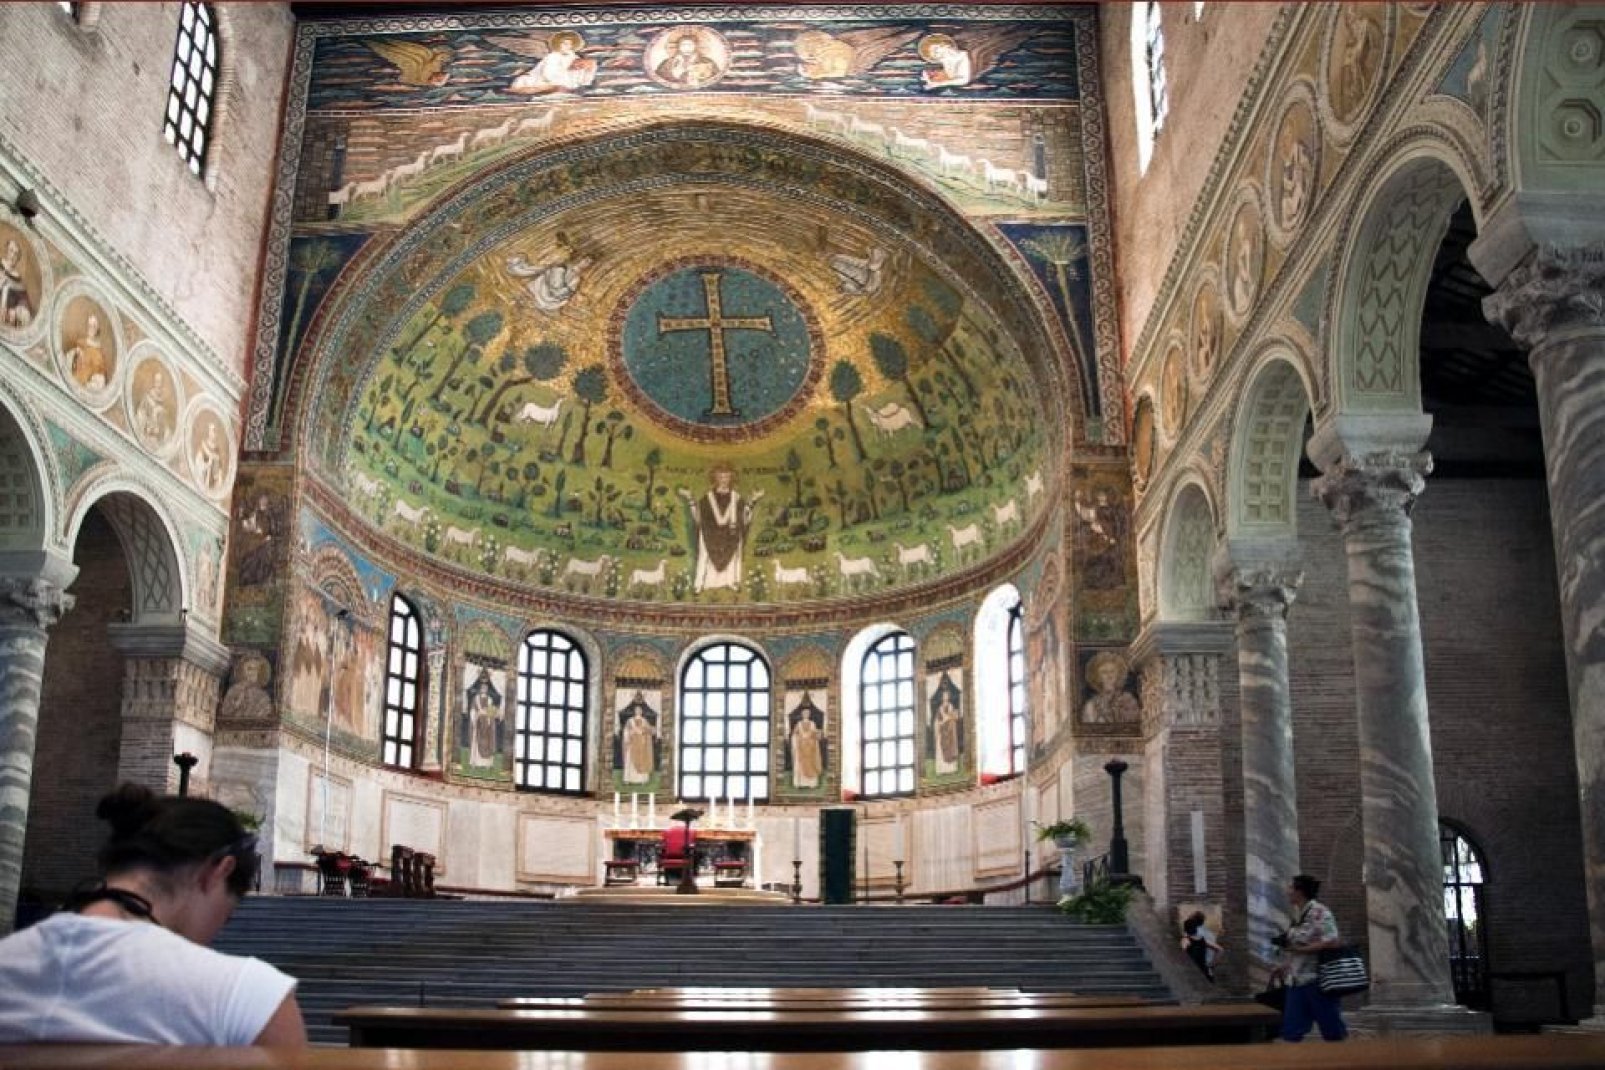 Esta basílica es conocida precisamente por sus mosaicos, aunque también cabe destacar su interior, bellamente decorado con mármoles policromados, estucados, capiteles y columnas esculpidas.